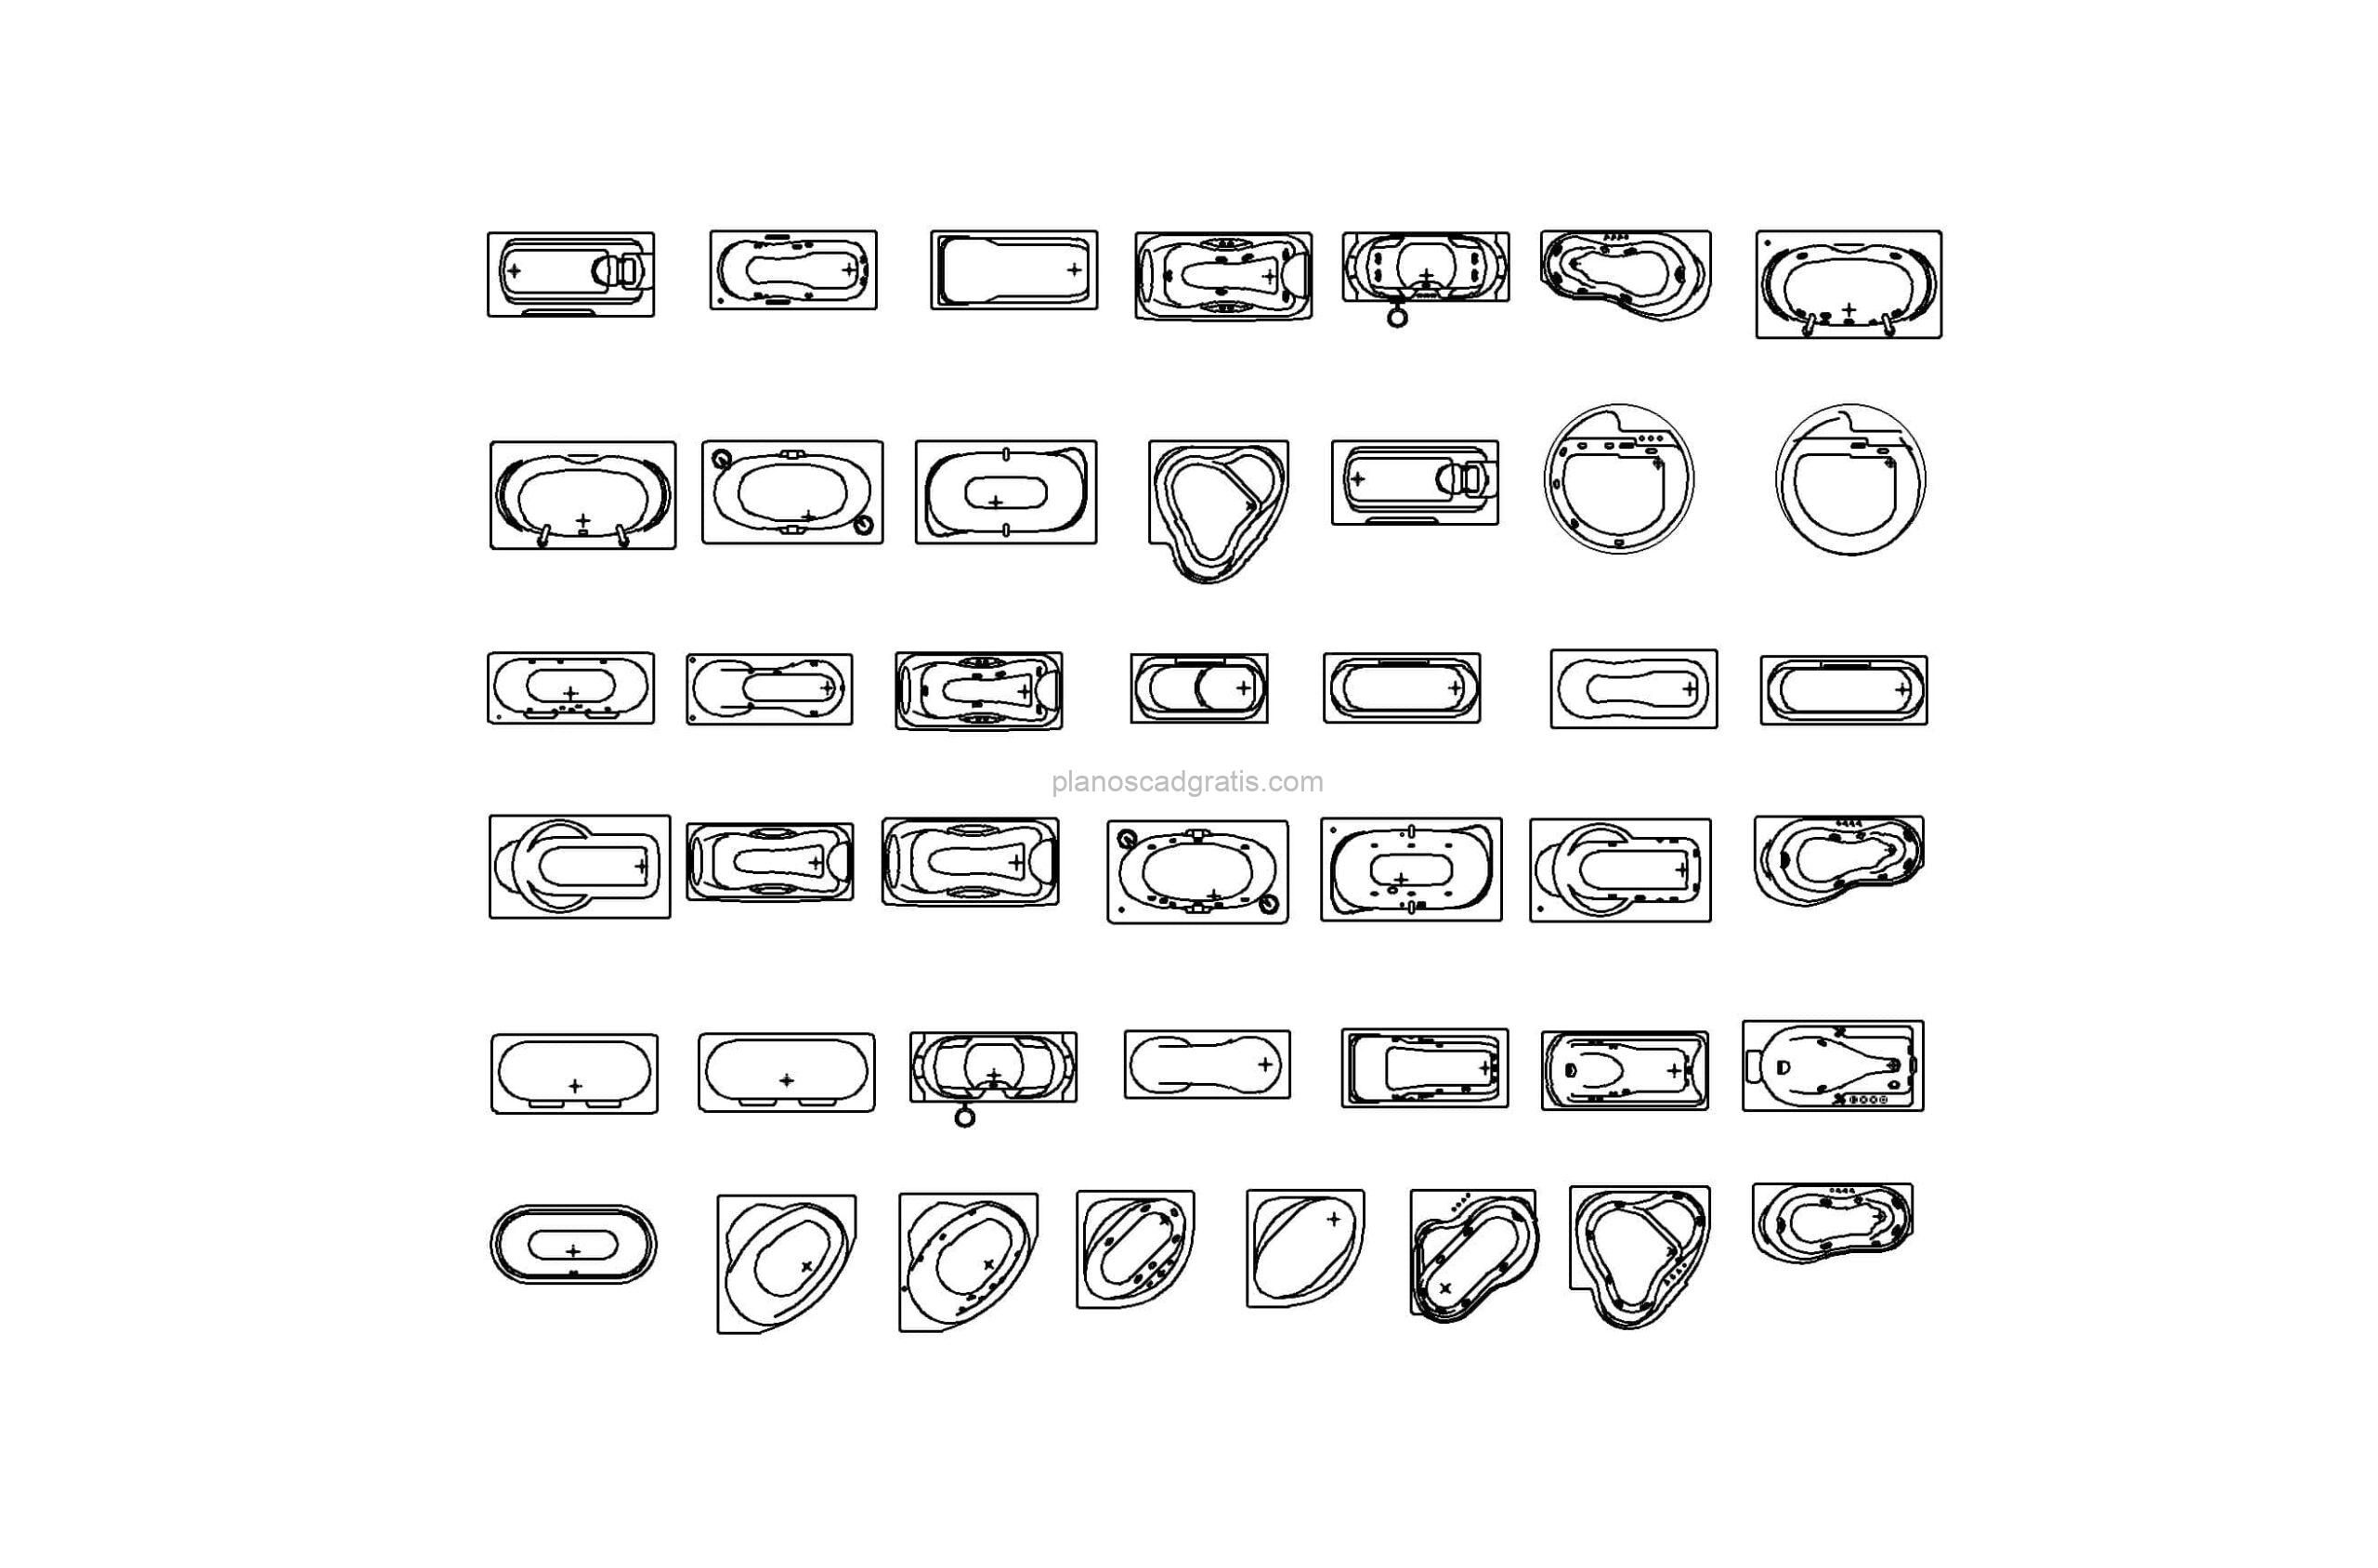 dibujo de autocad de diferentes tipos de bañeras, vistas en planta archivo 2d dwg para descarga gratis